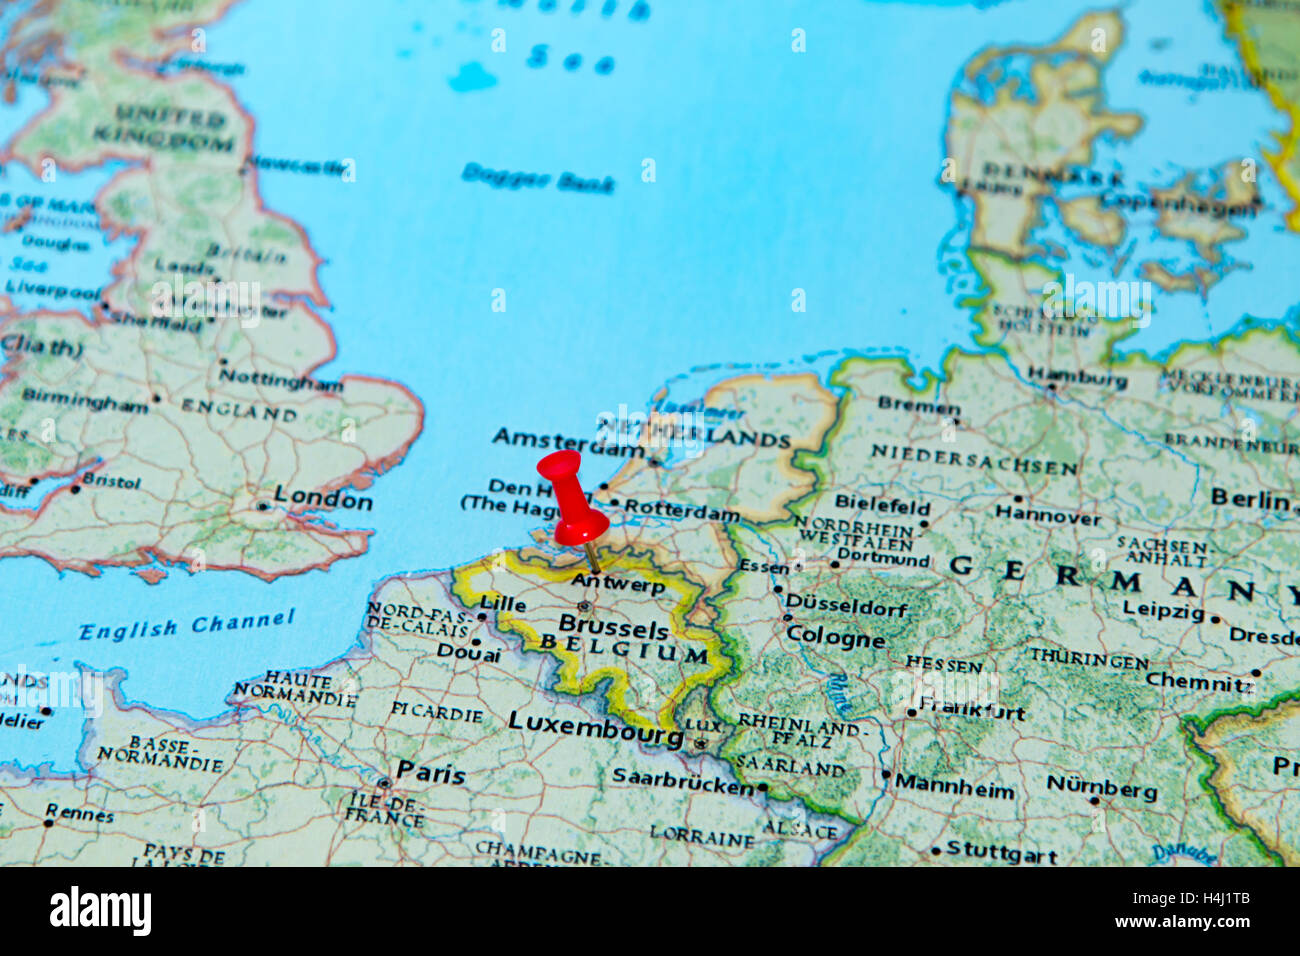 Anversa, Belgio imperniata su una mappa dell'Europa. Foto Stock